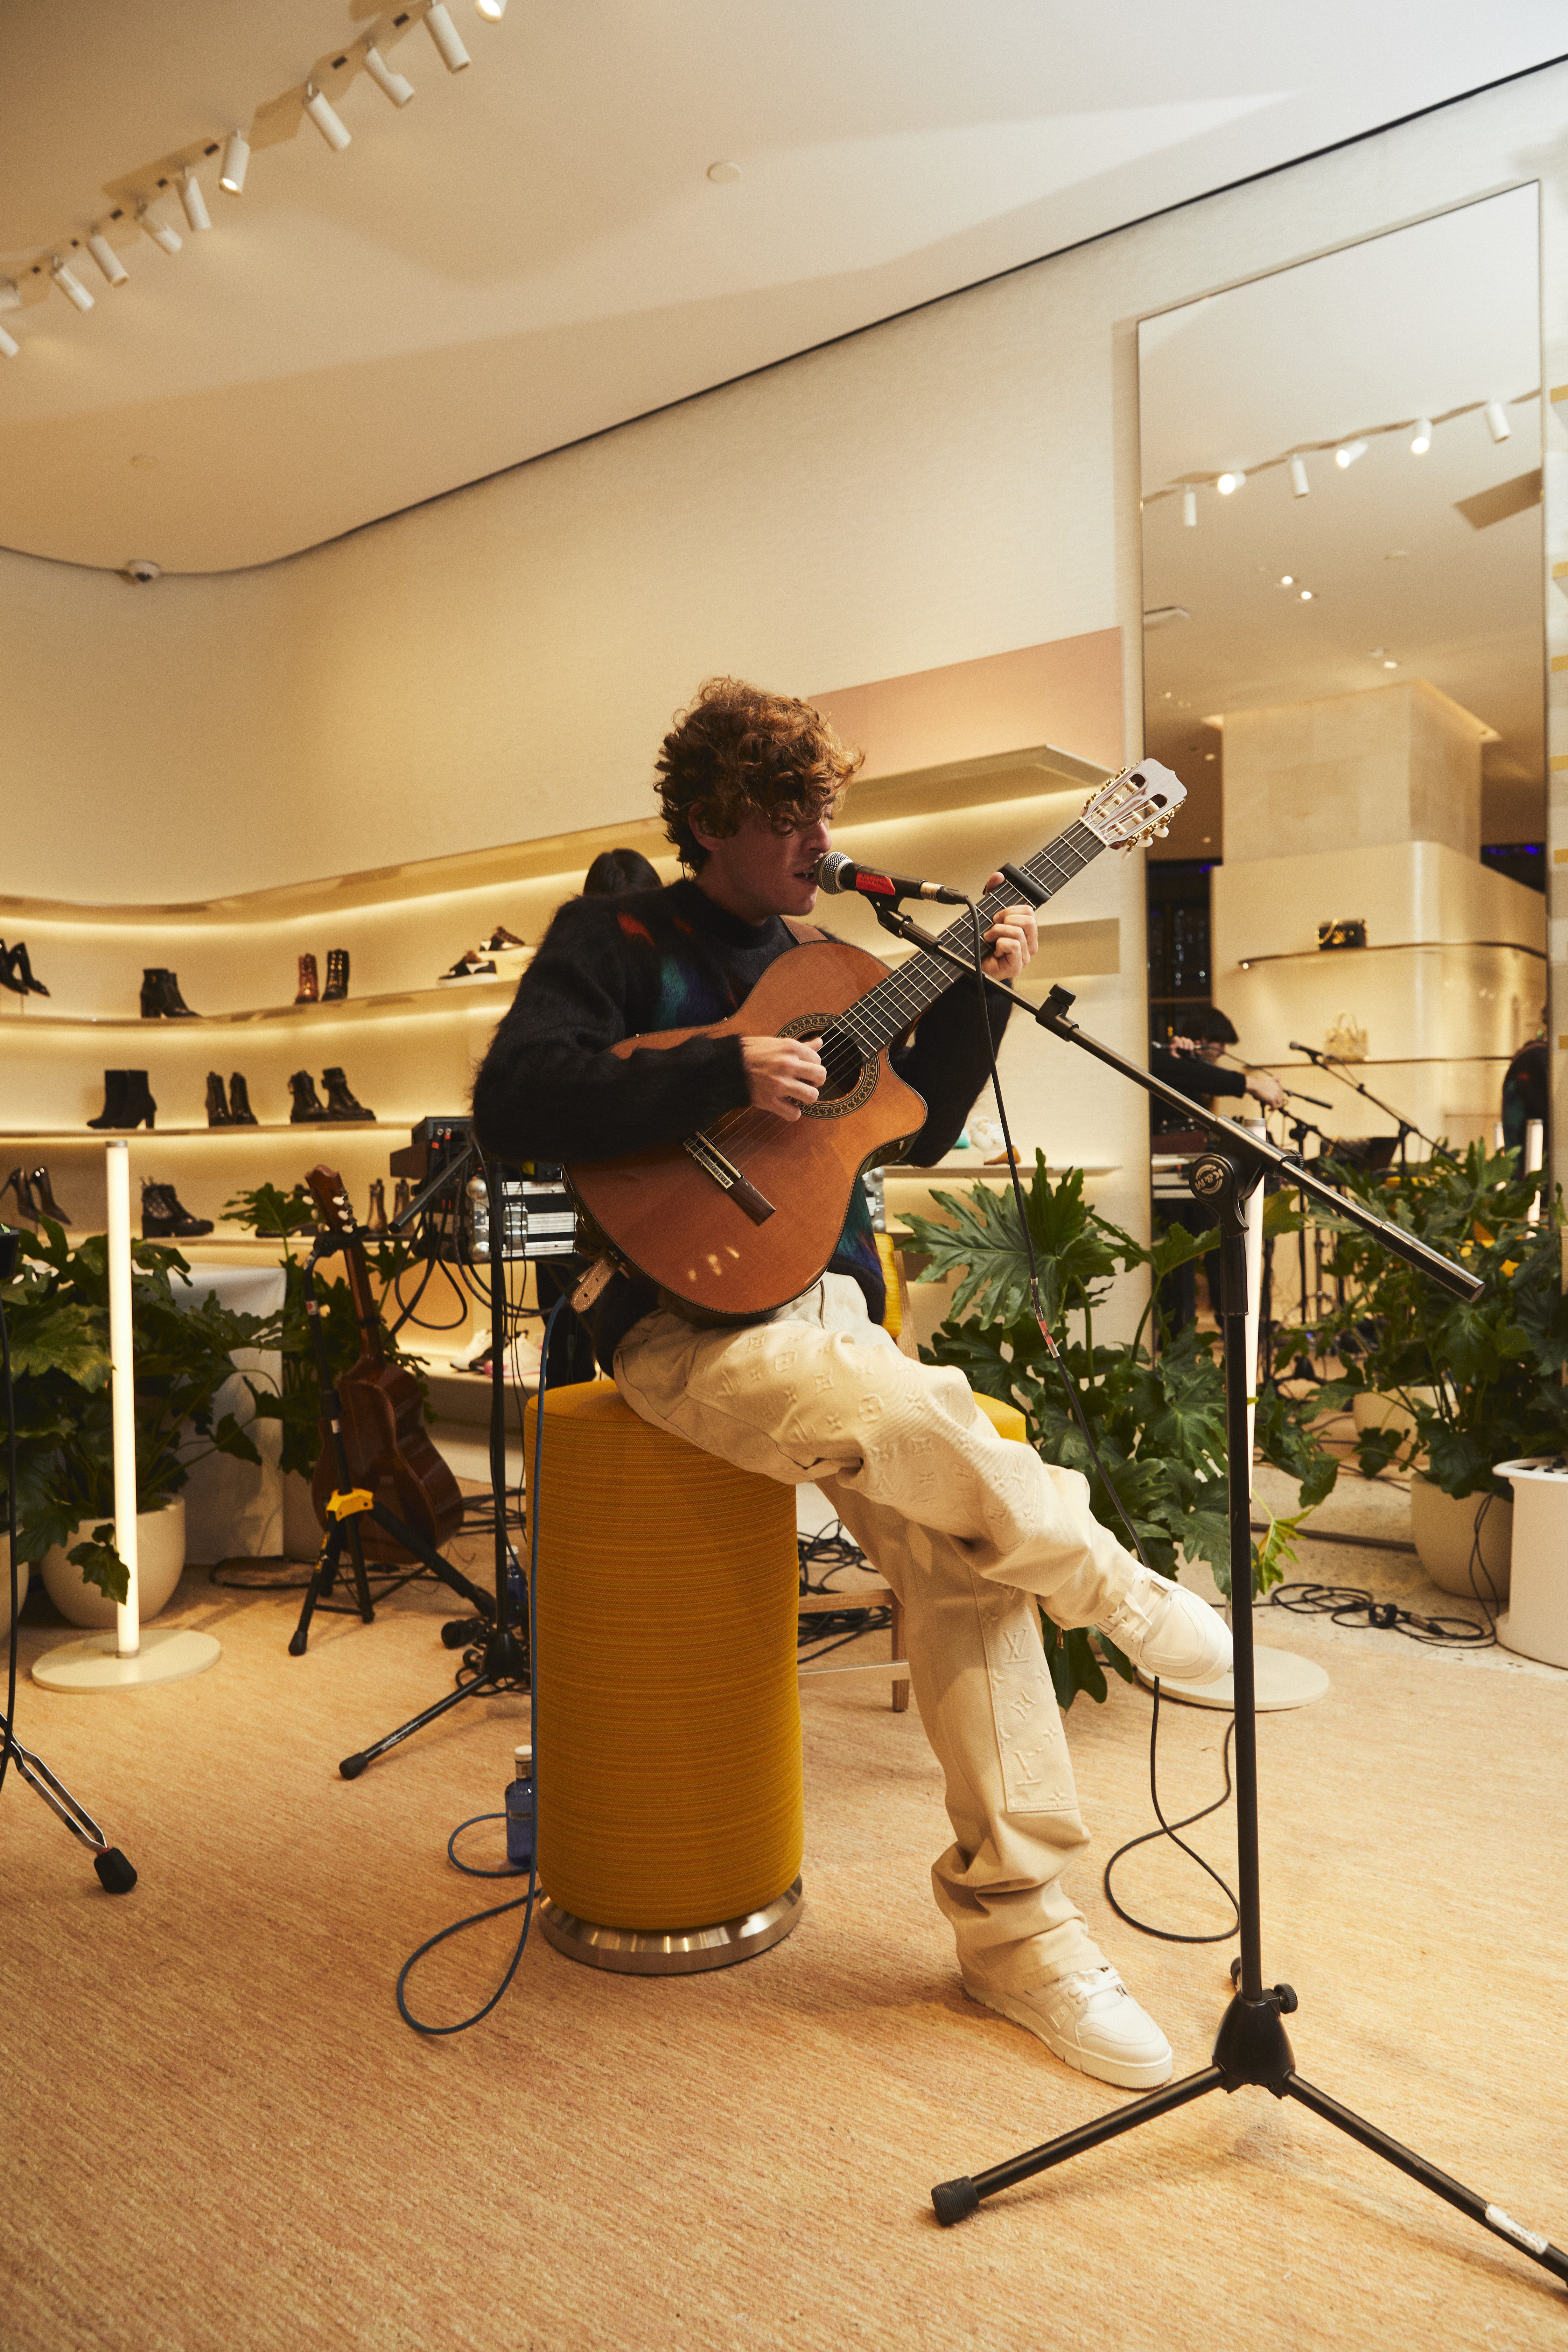 Louis Vuitton abre en Galería Canalejas su tercera tienda en